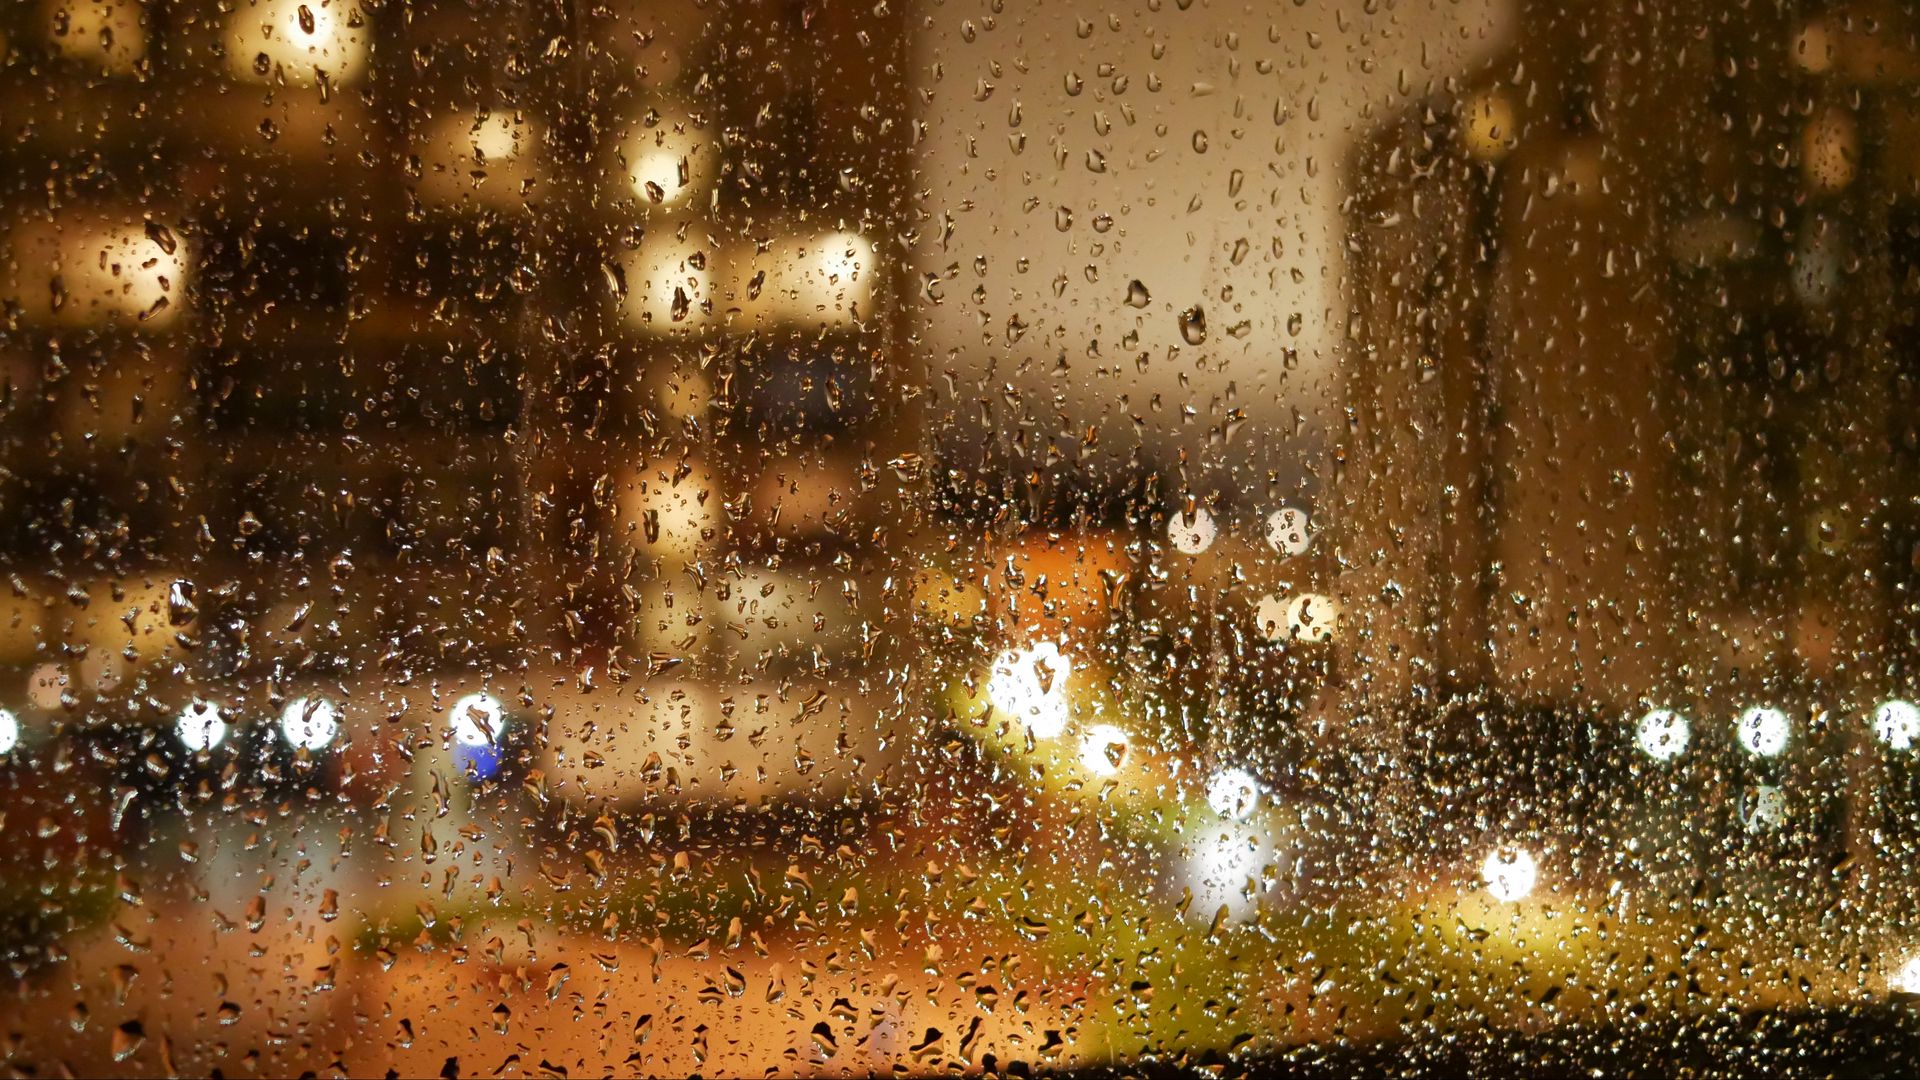 Download wallpaper 1920x1080 window, glass, rain, drops, lights, blur full  hd, hdtv, fhd, 1080p hd background